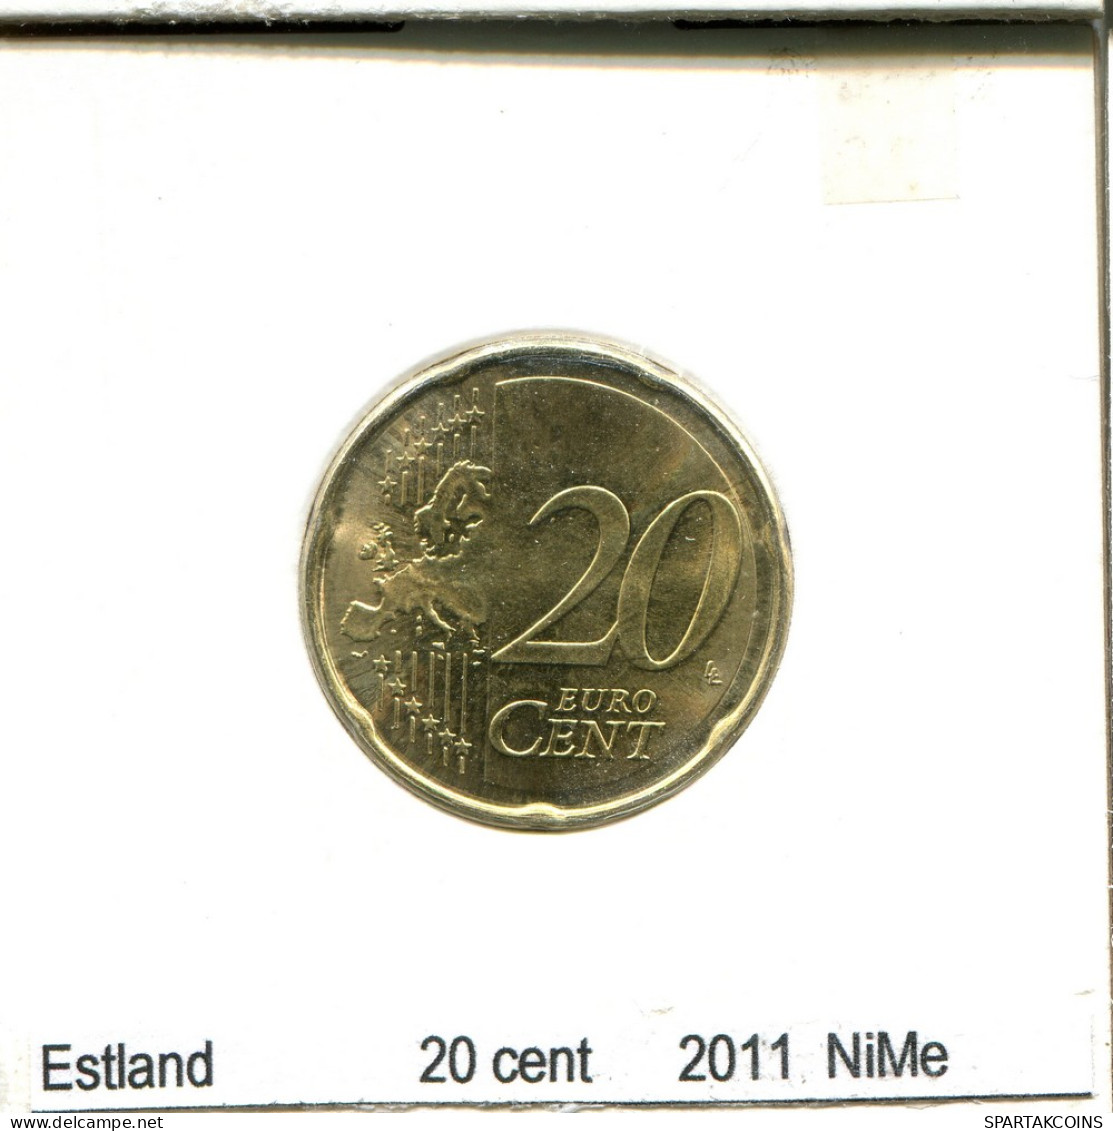 20 CENTS 2011 ESTONIA Coin #AS688.U - Estonie